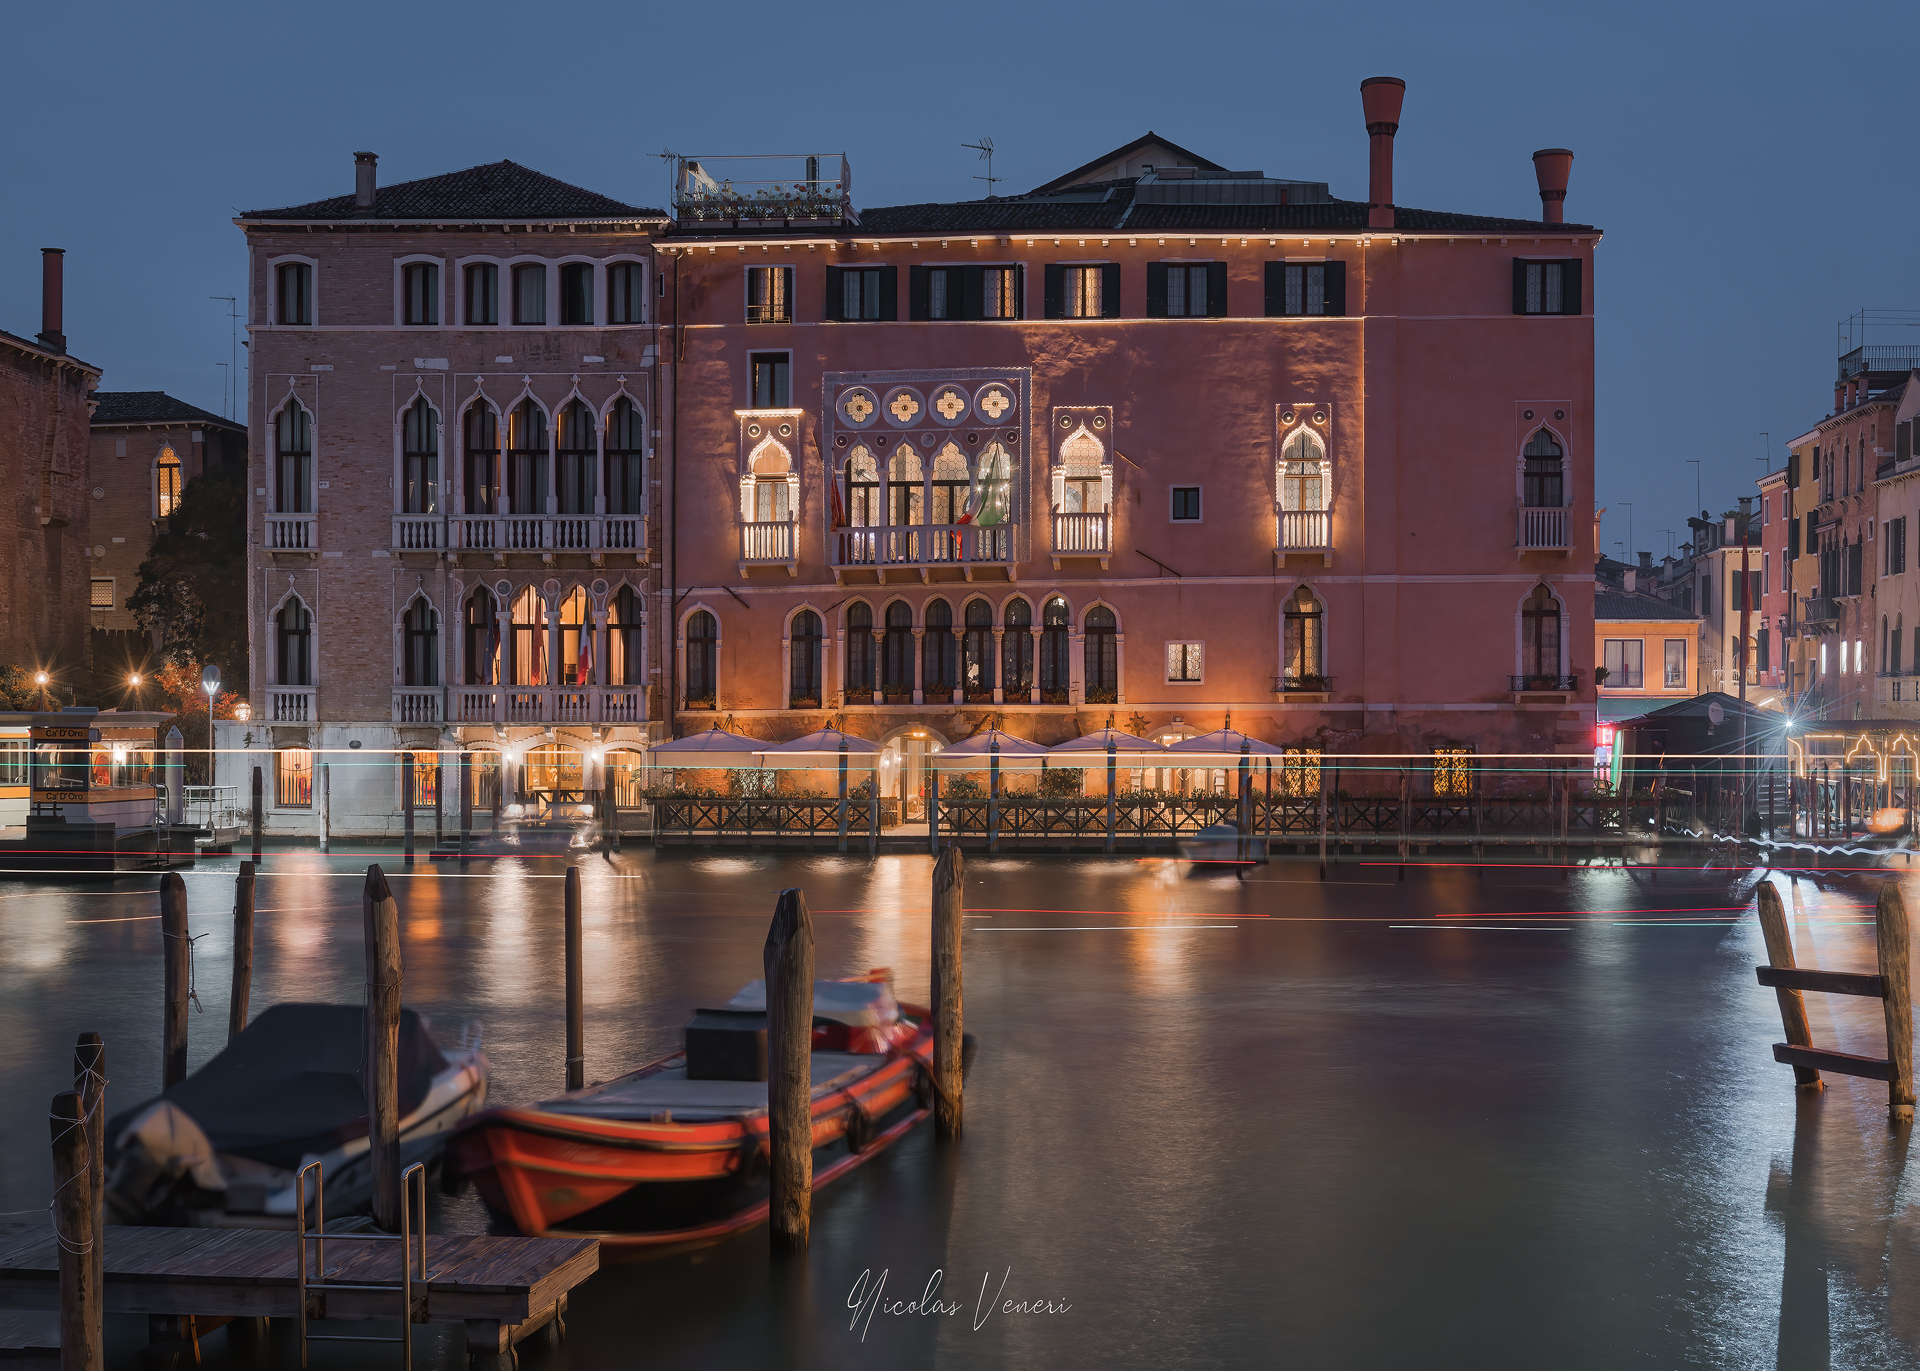 a common Hotel in Venice ...